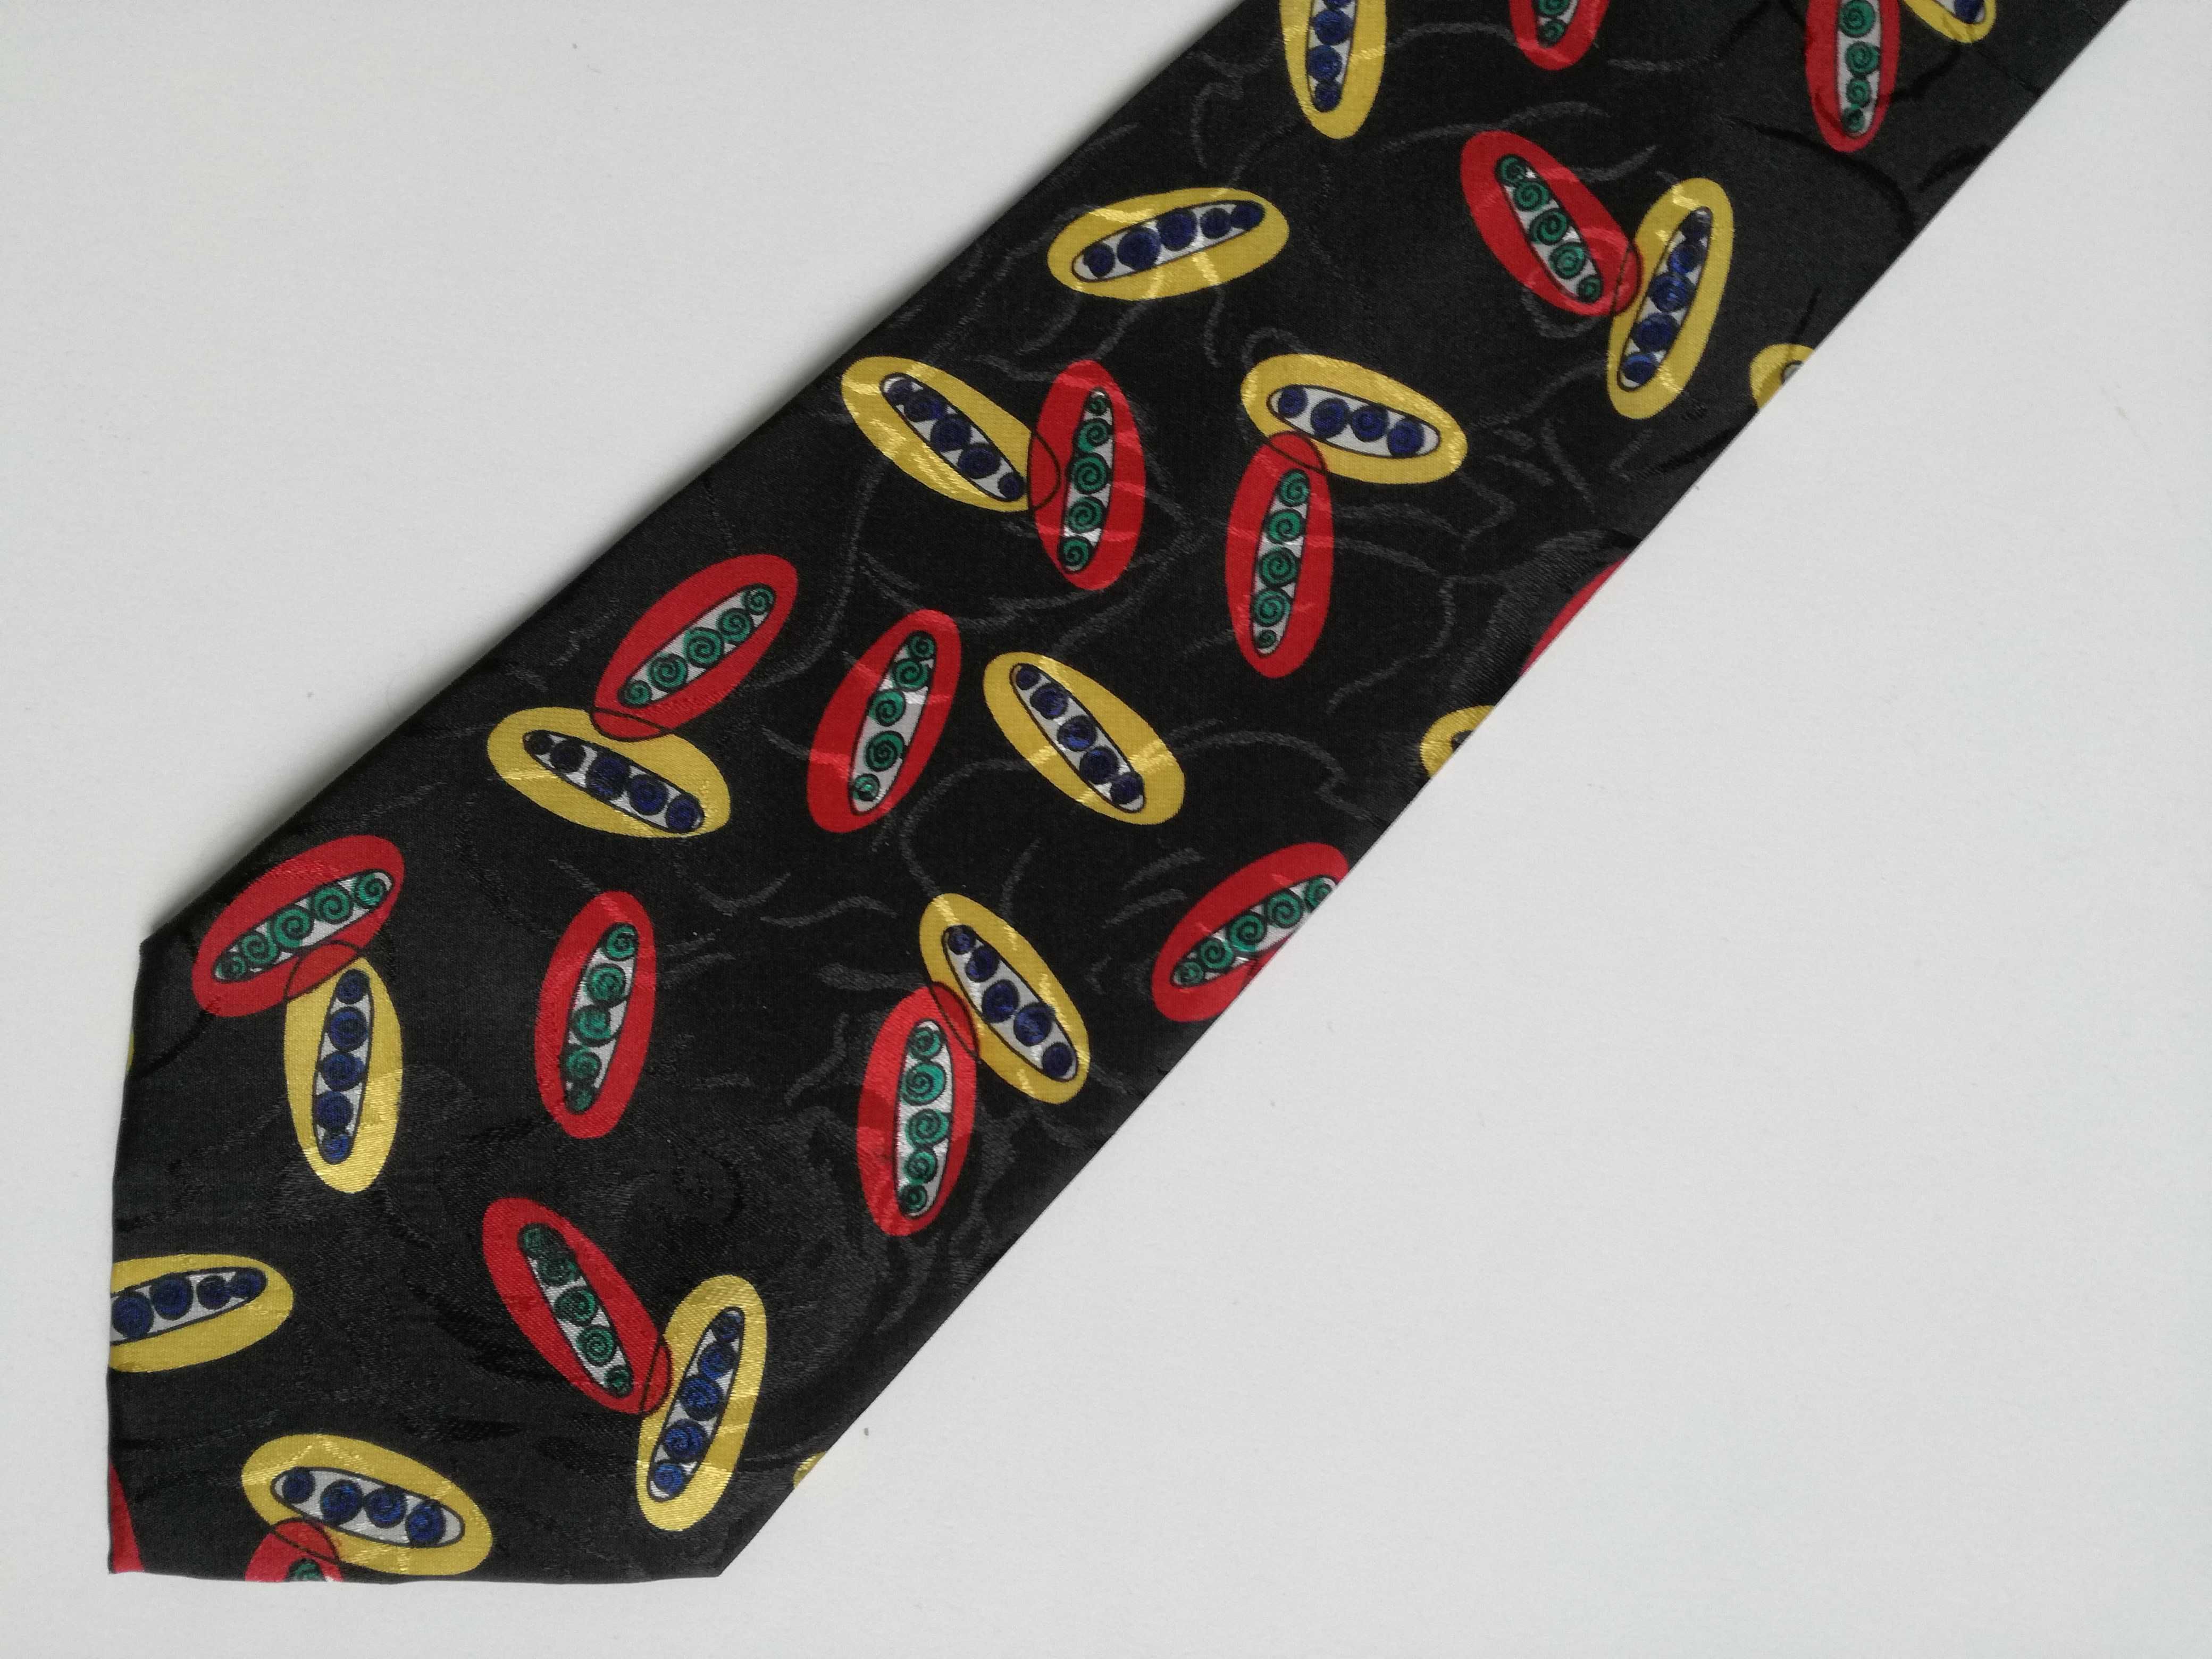 Krawat jedwabny w kolorowe eliptyczne wzory